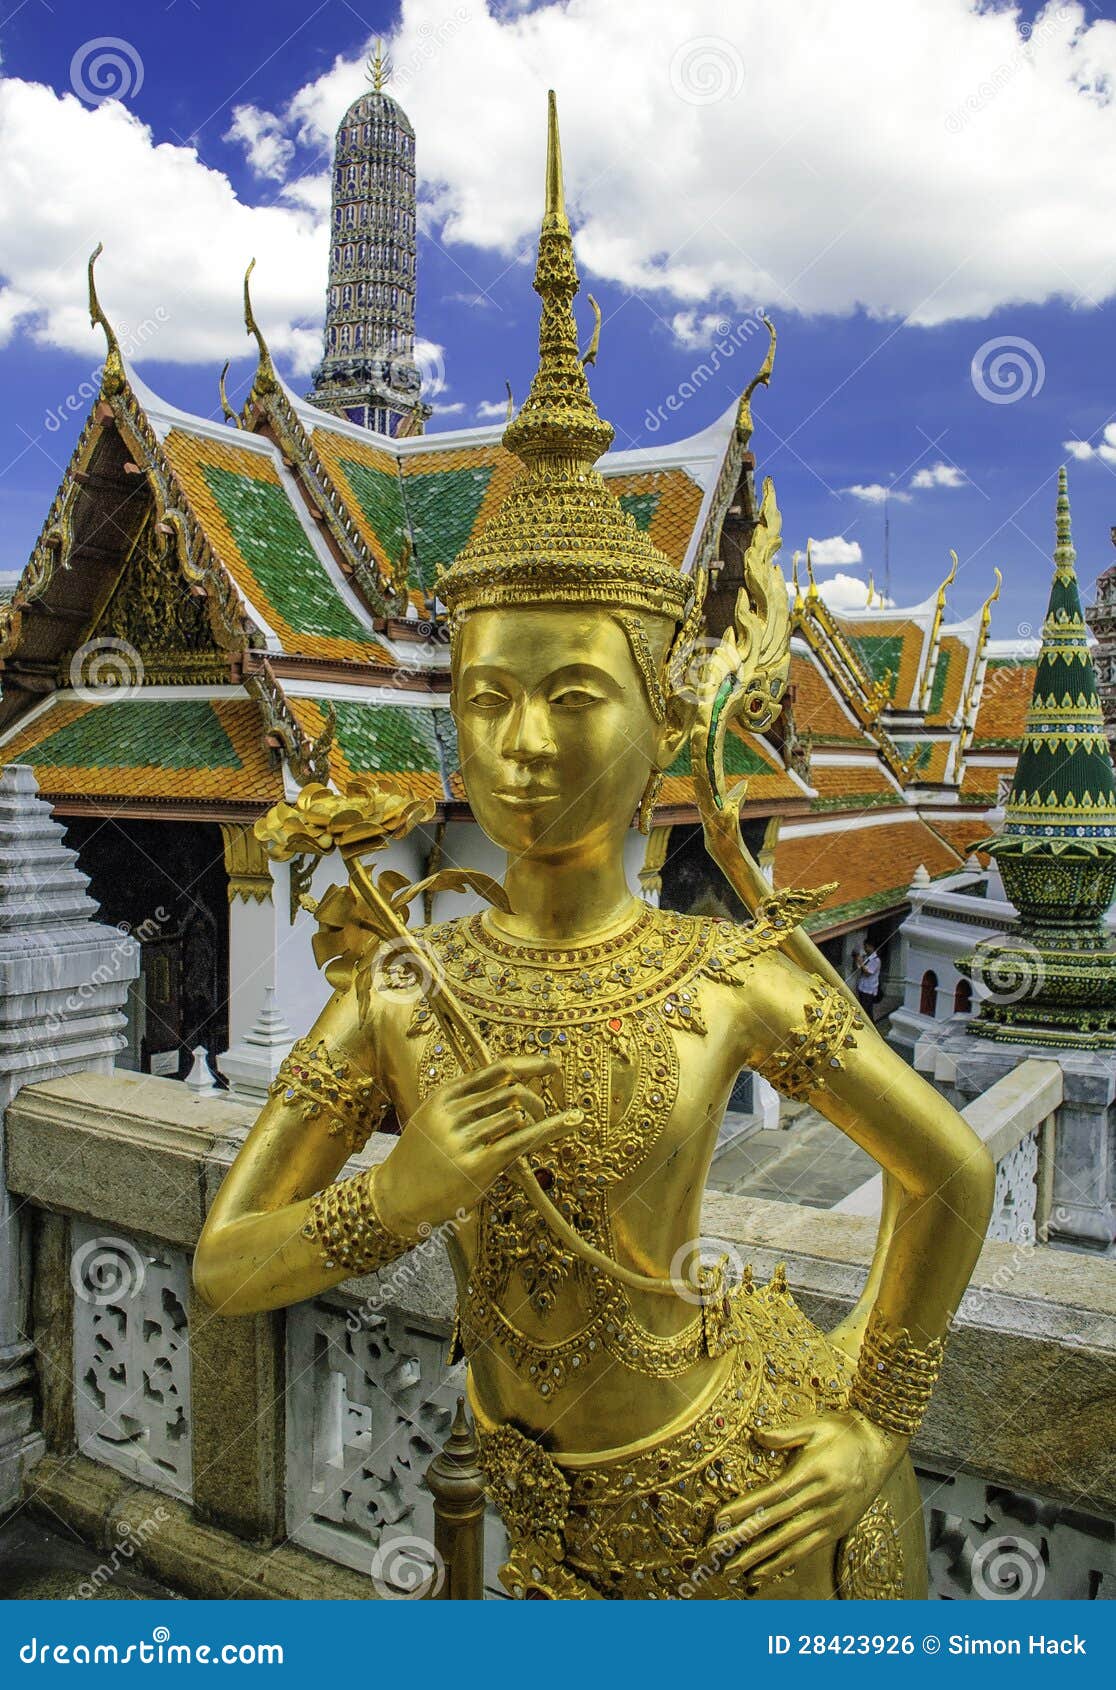 gold statue at the royal palace in bangkok,thailand